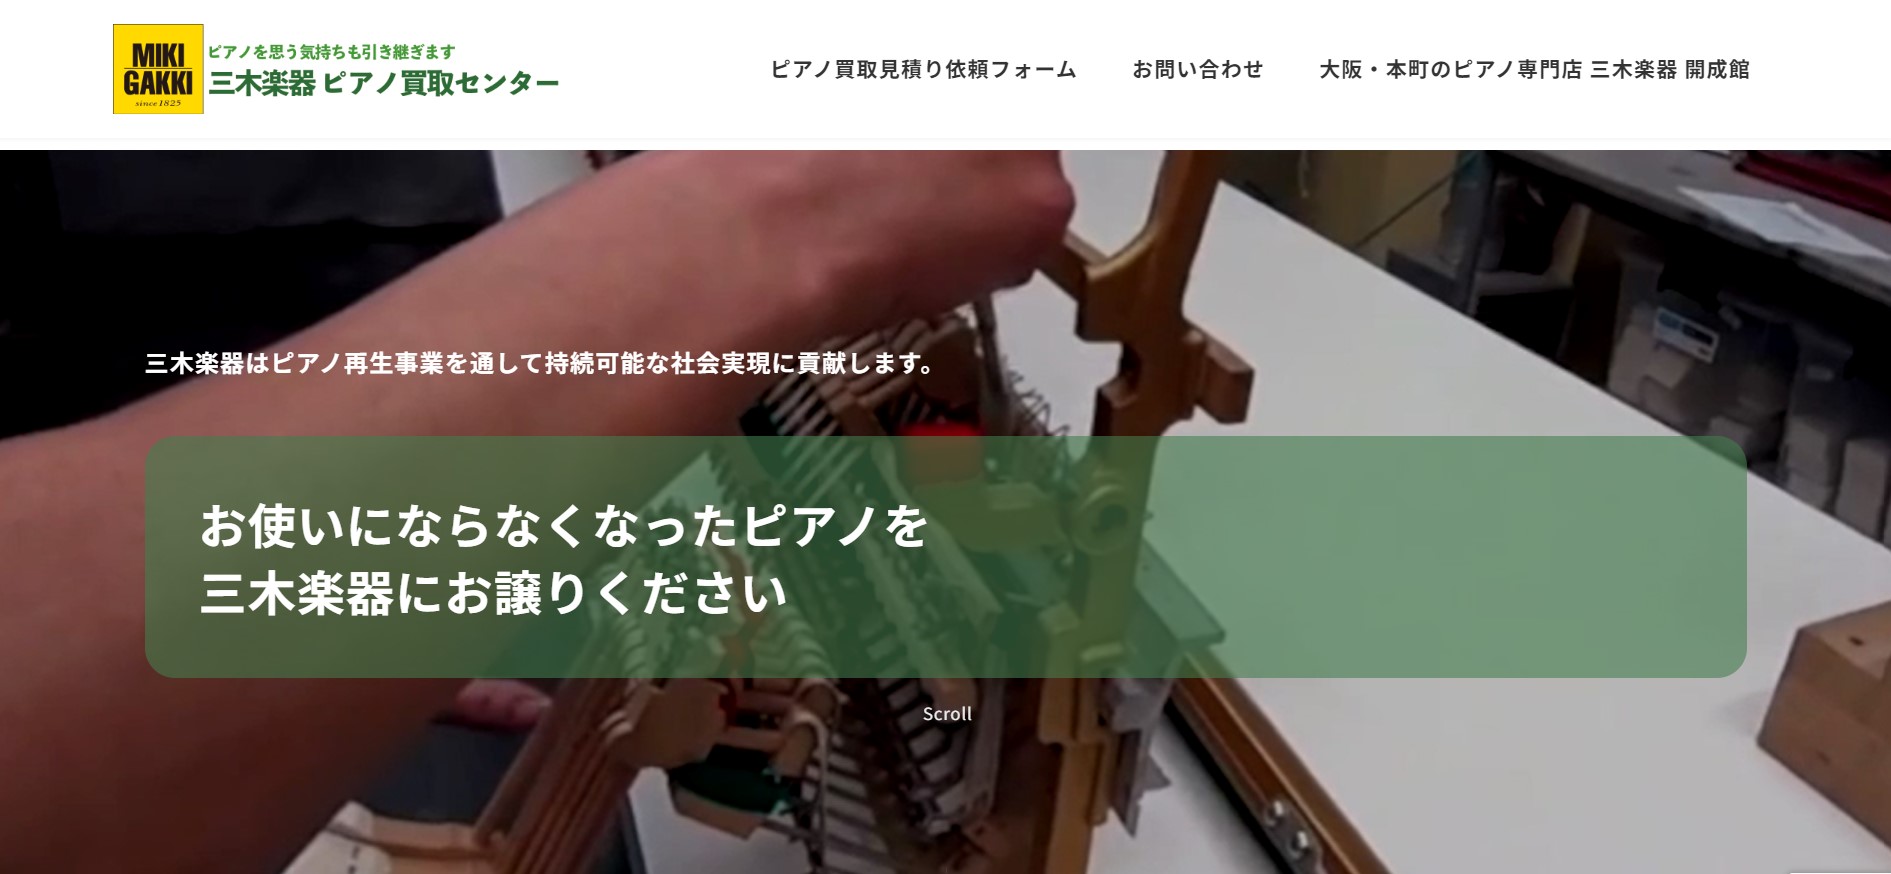 三木楽器ピアノ買取サイト